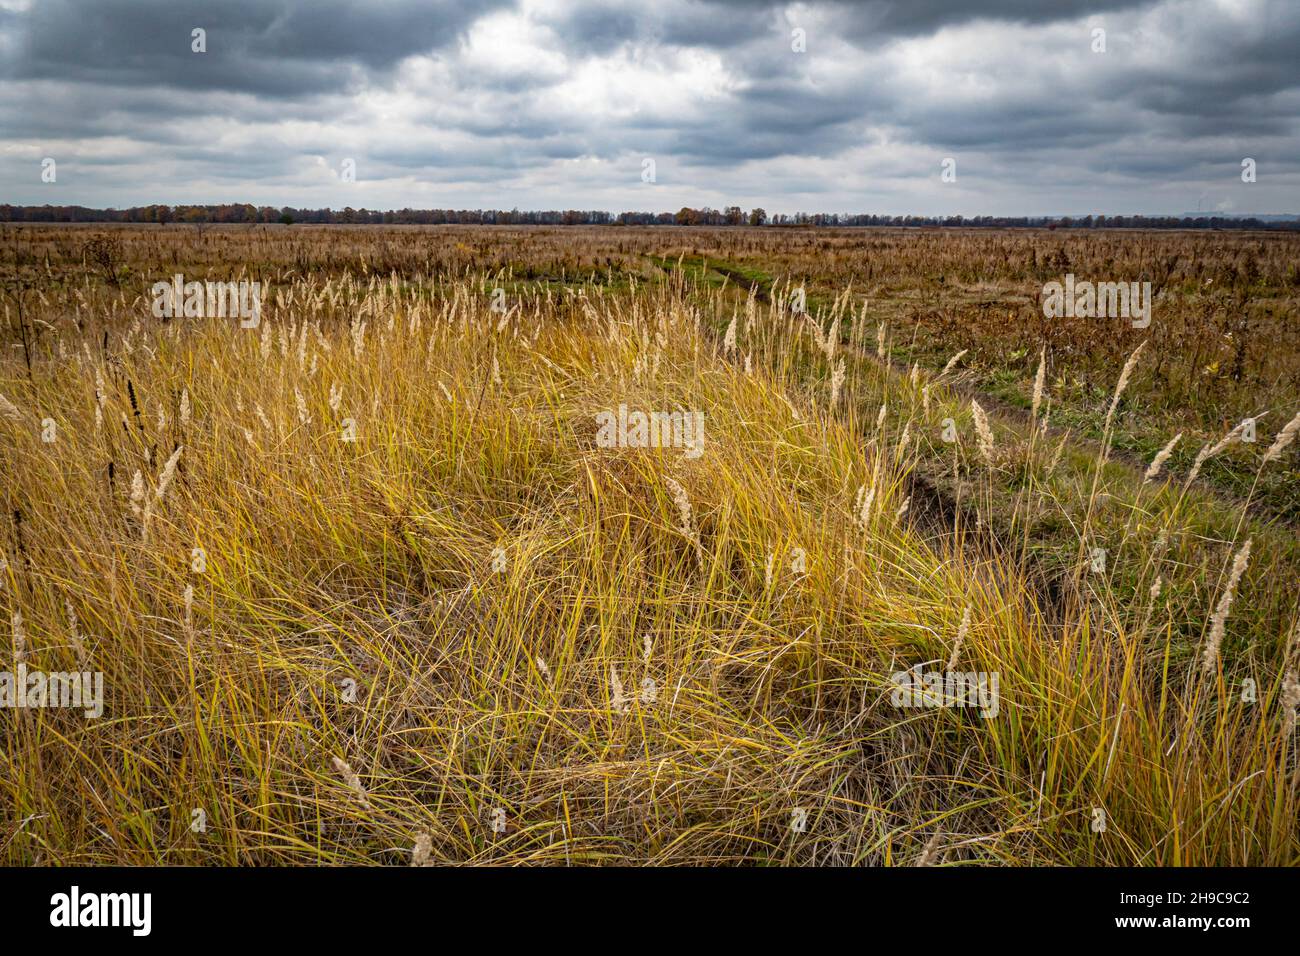 Route de campagne dans un champ avec de l'herbe jaunée sous un ciel d'automne avec des nuages sombres Banque D'Images